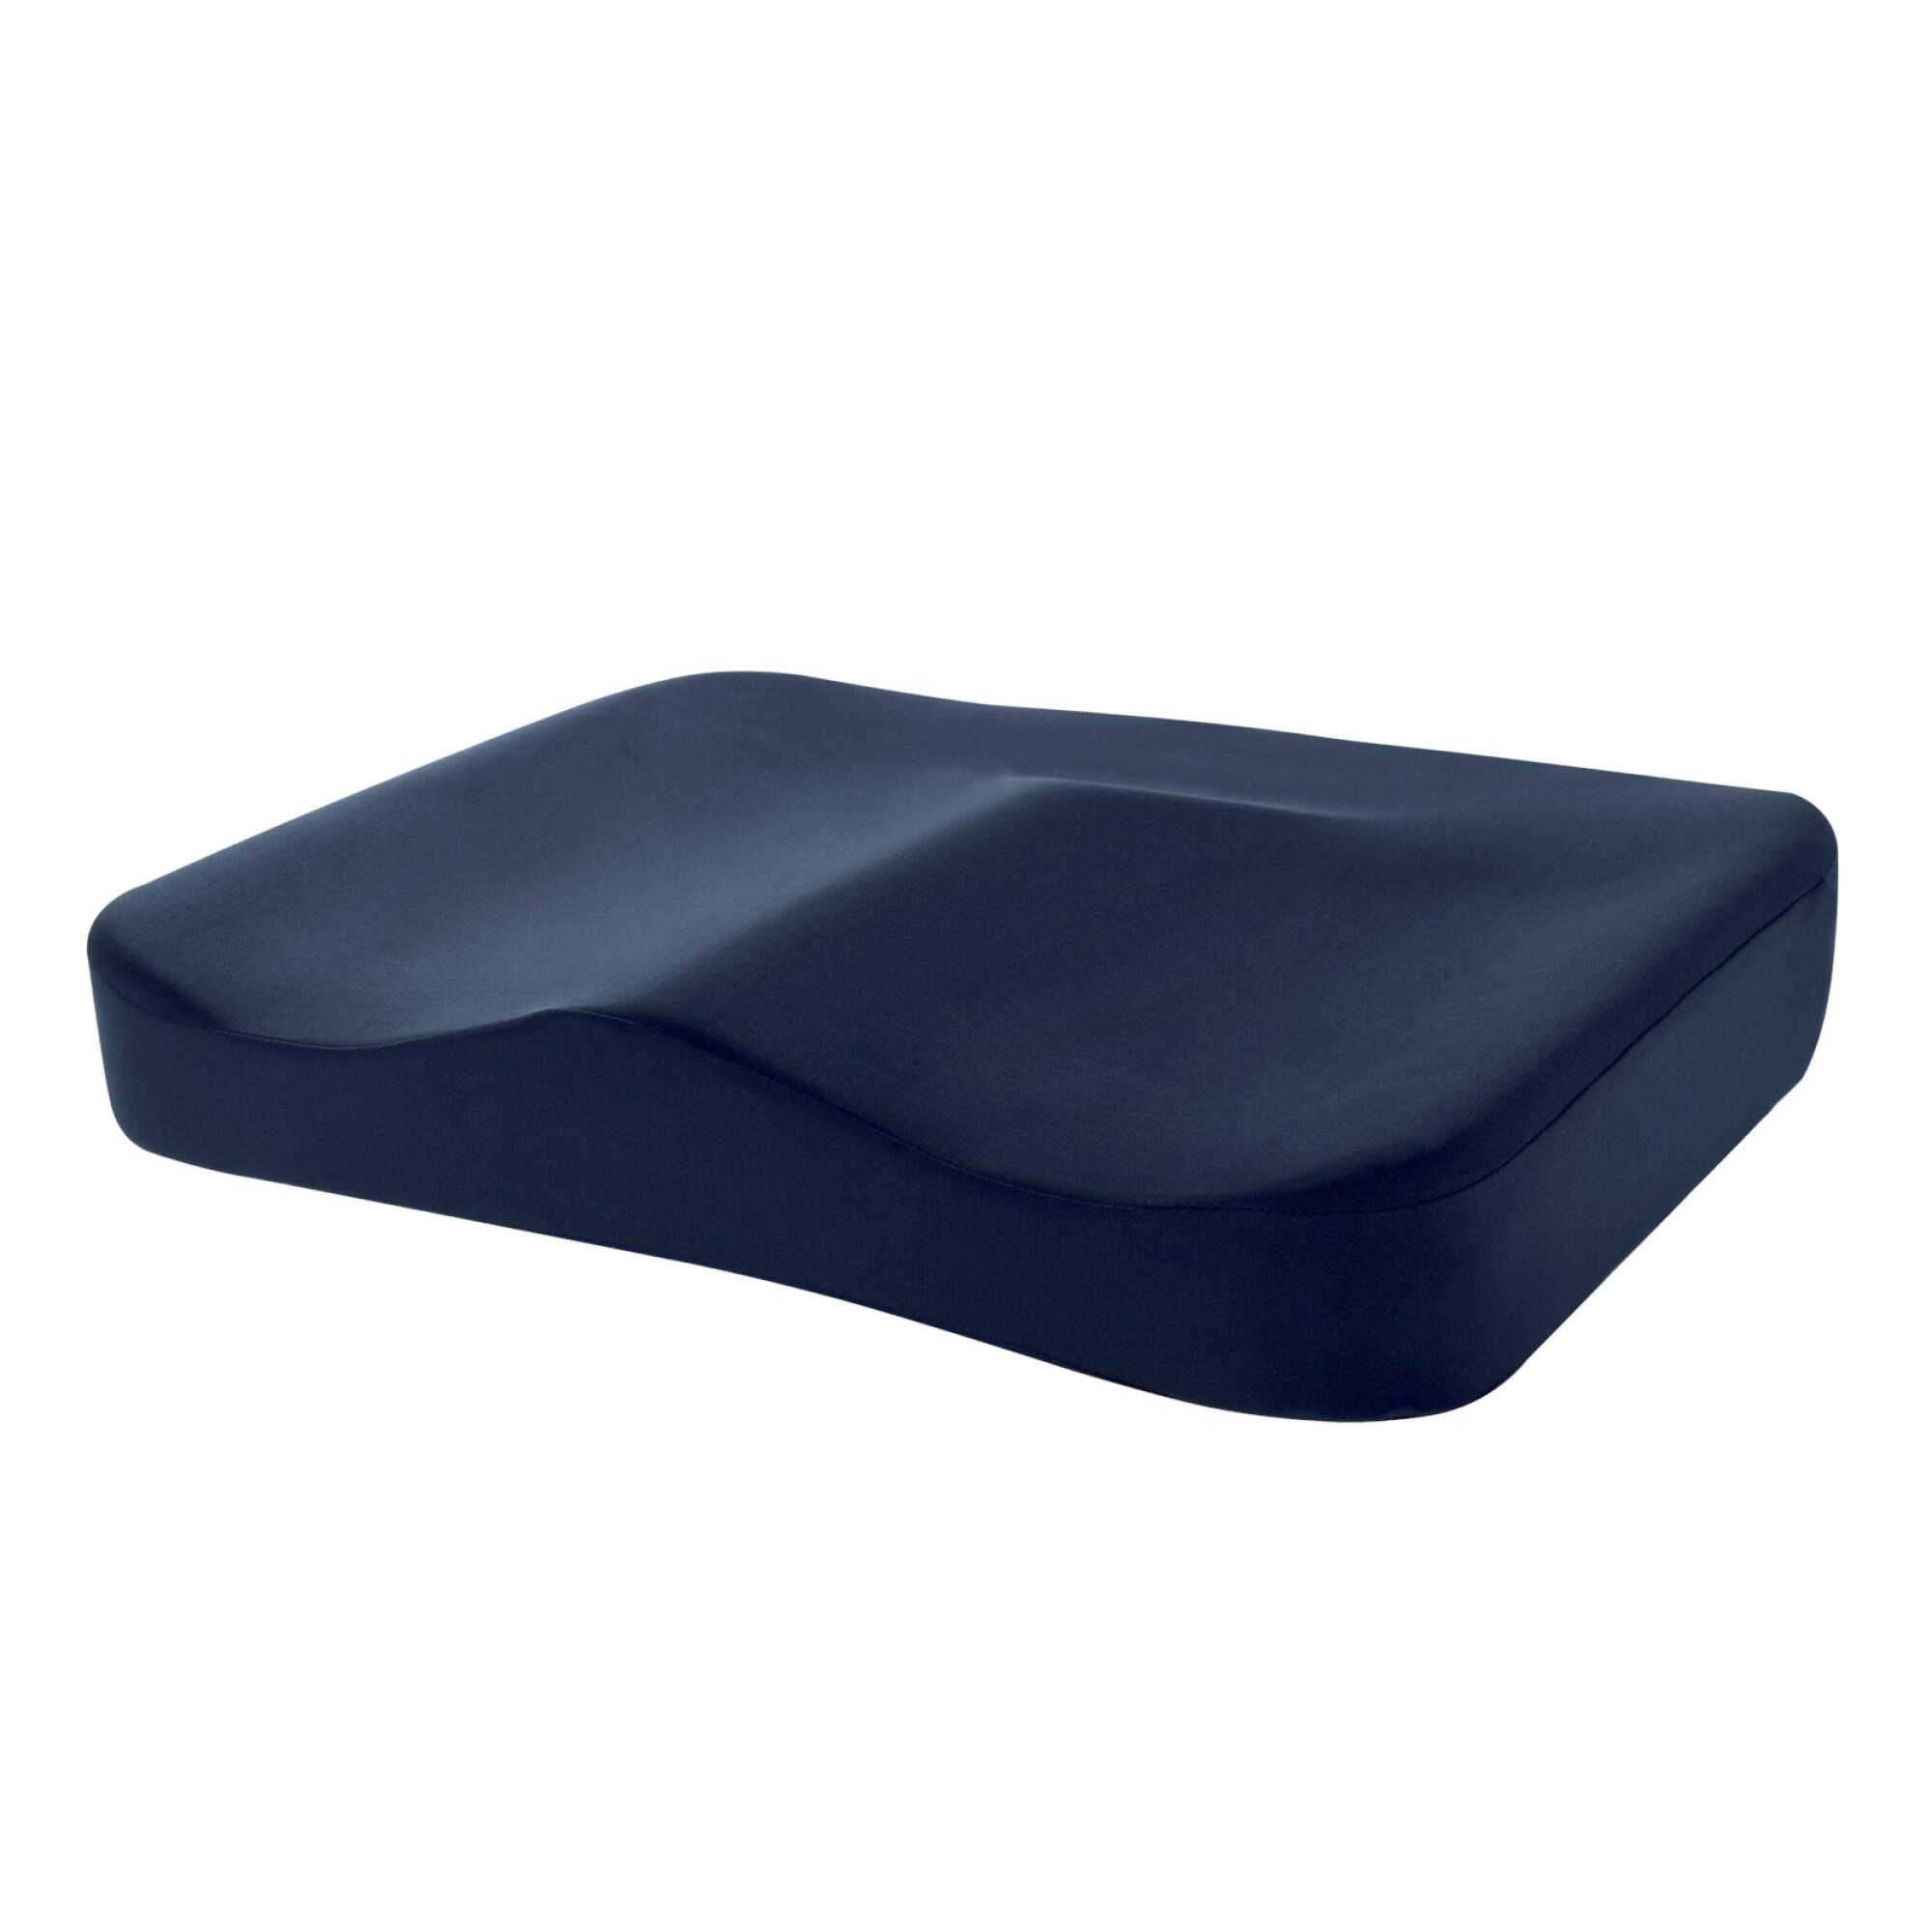 A navy blue seat cushion